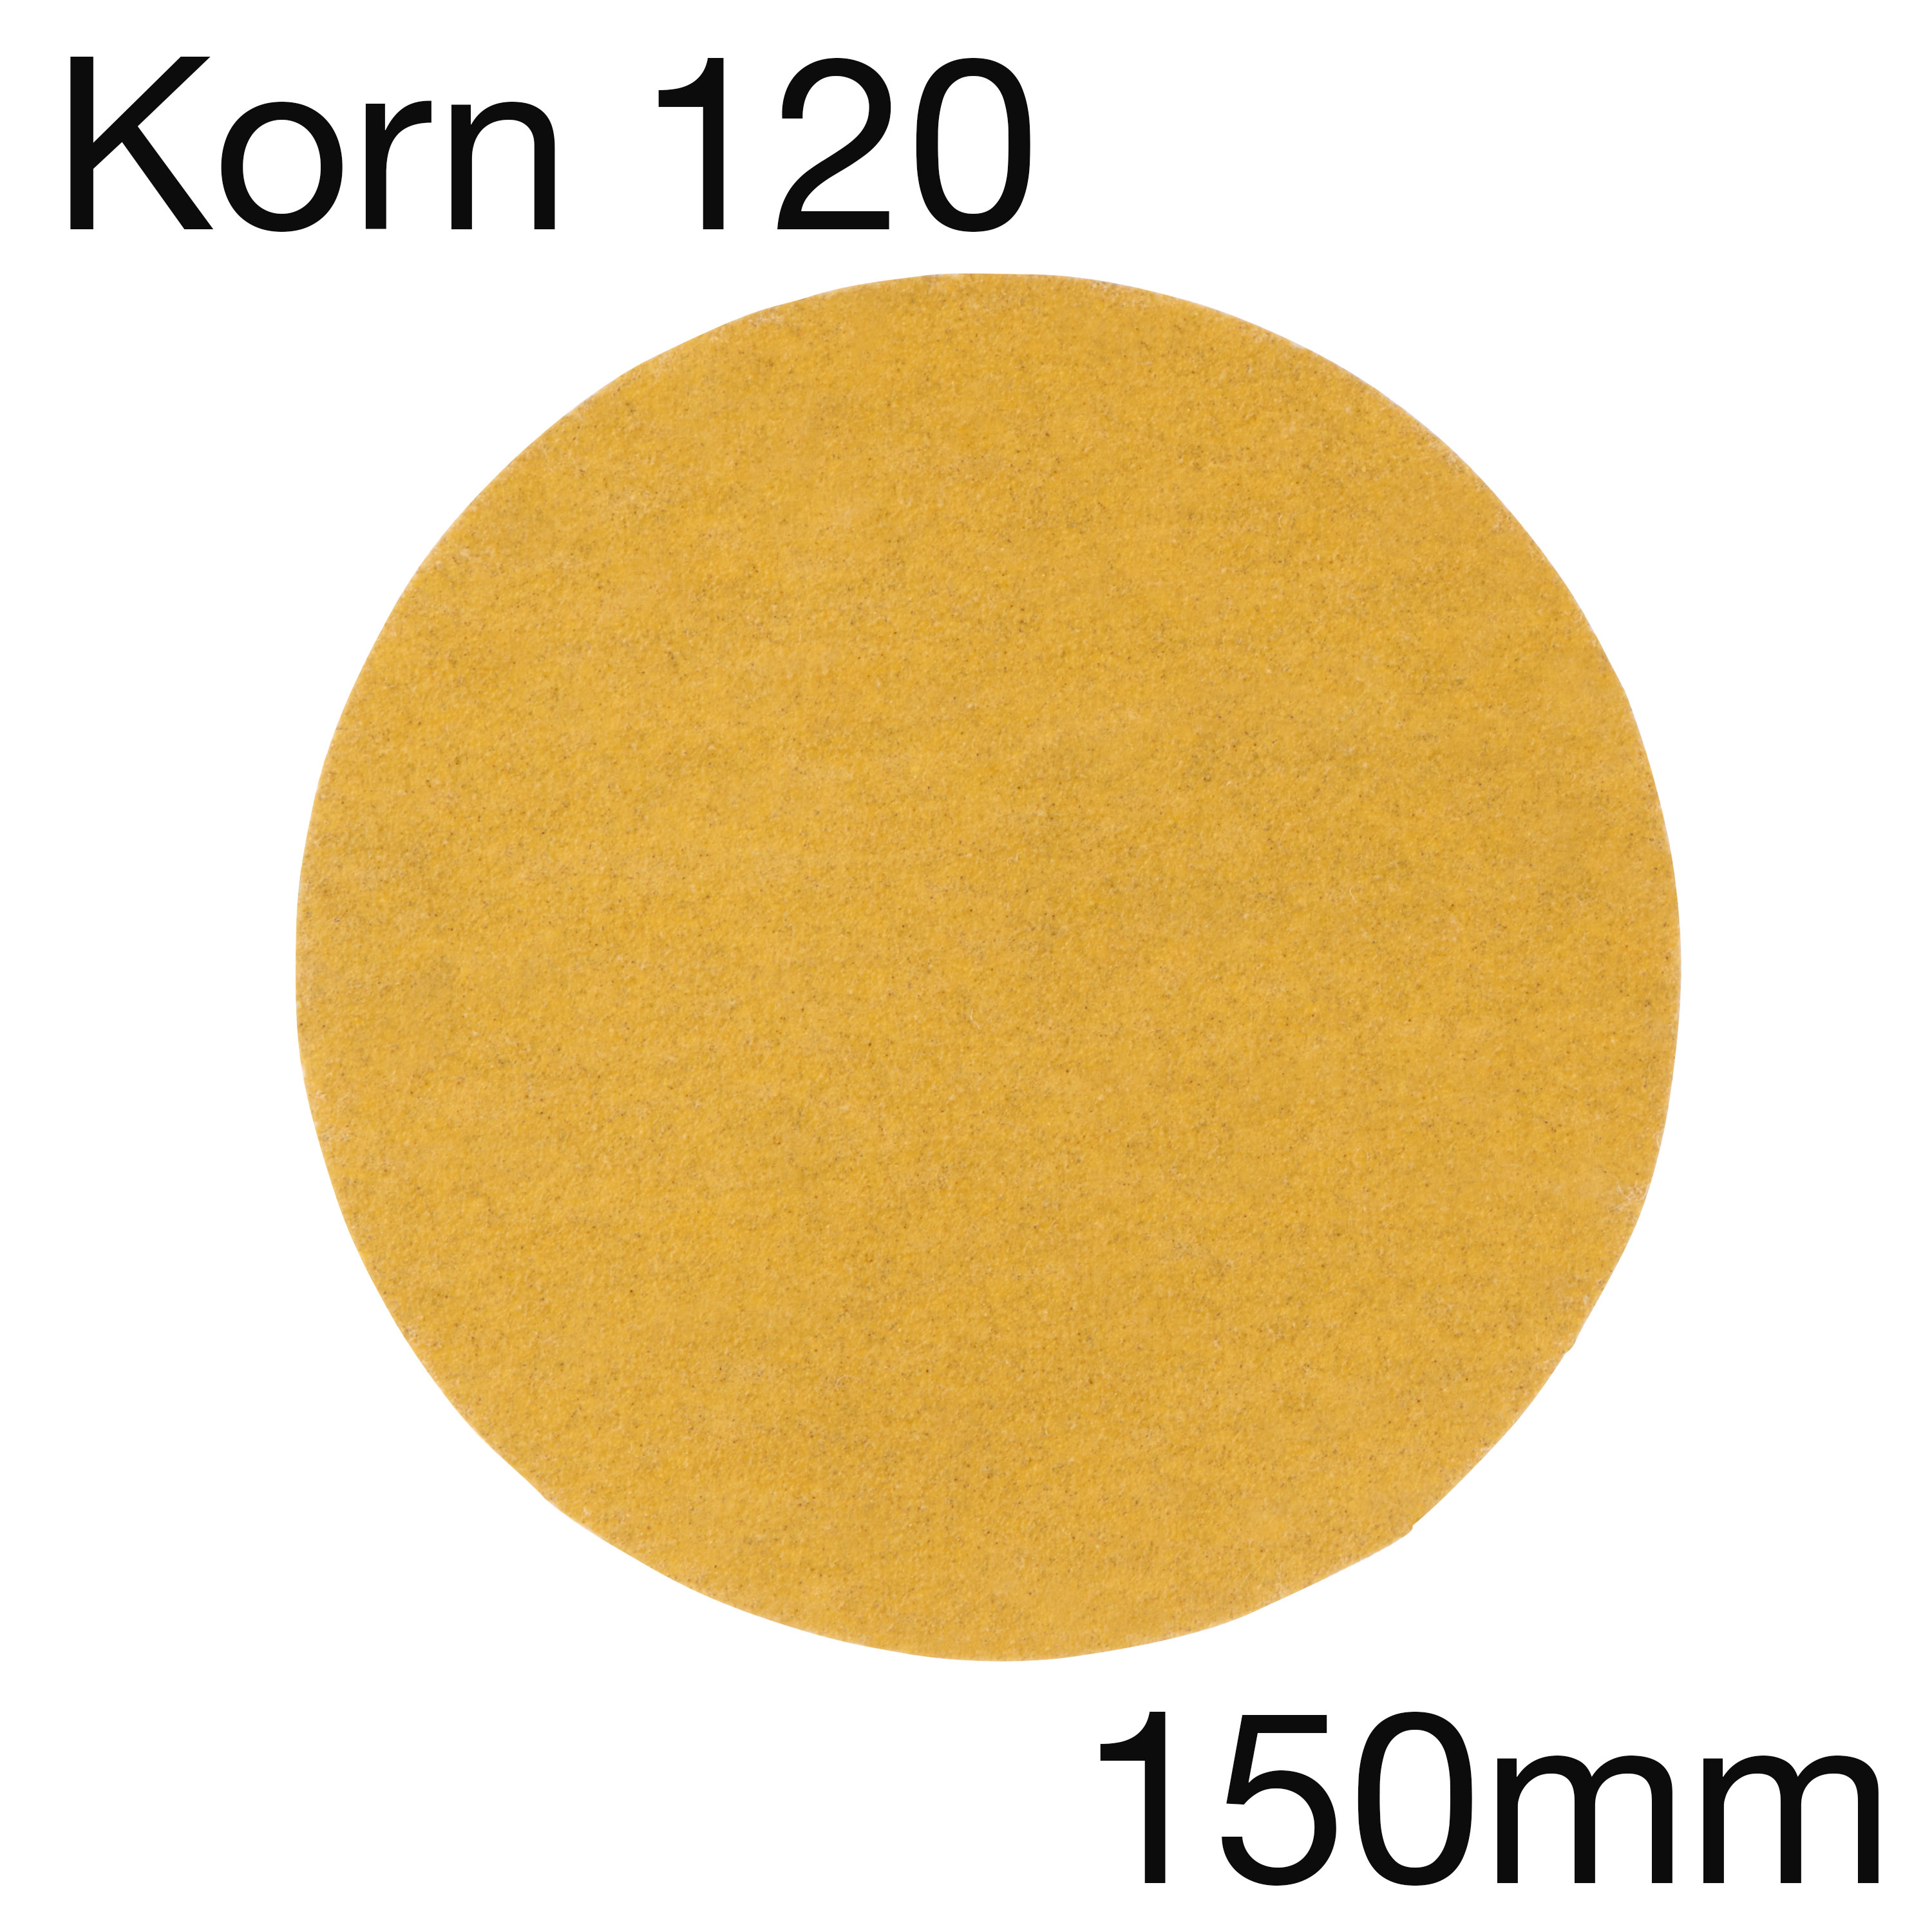 3M 255 00339 Hookit Papierschleifscheibe Gold, ungelocht, Korn 120, 150mm, Pack mit 100 Stk